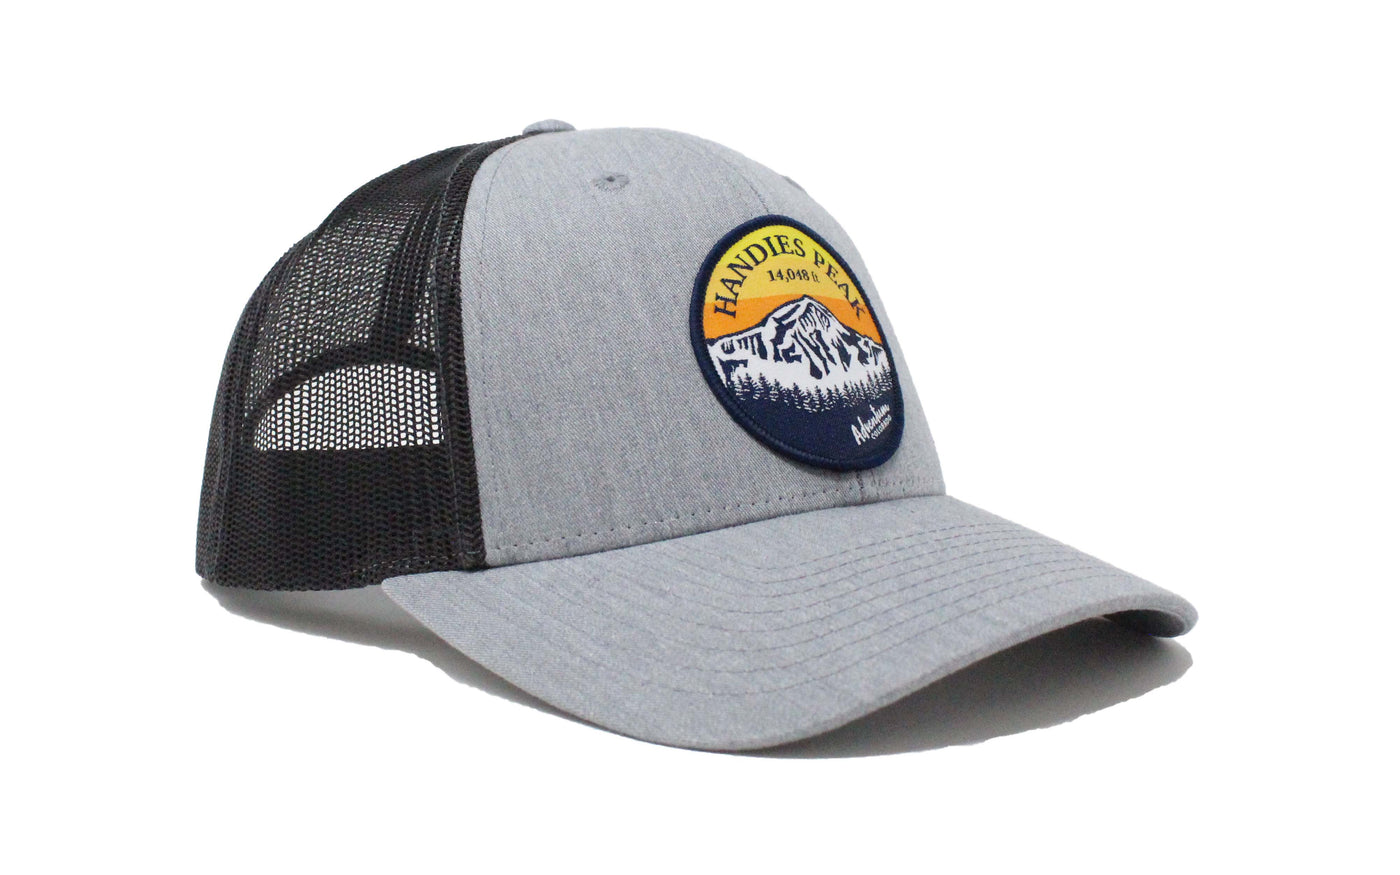 Handies Peak Trucker Hat